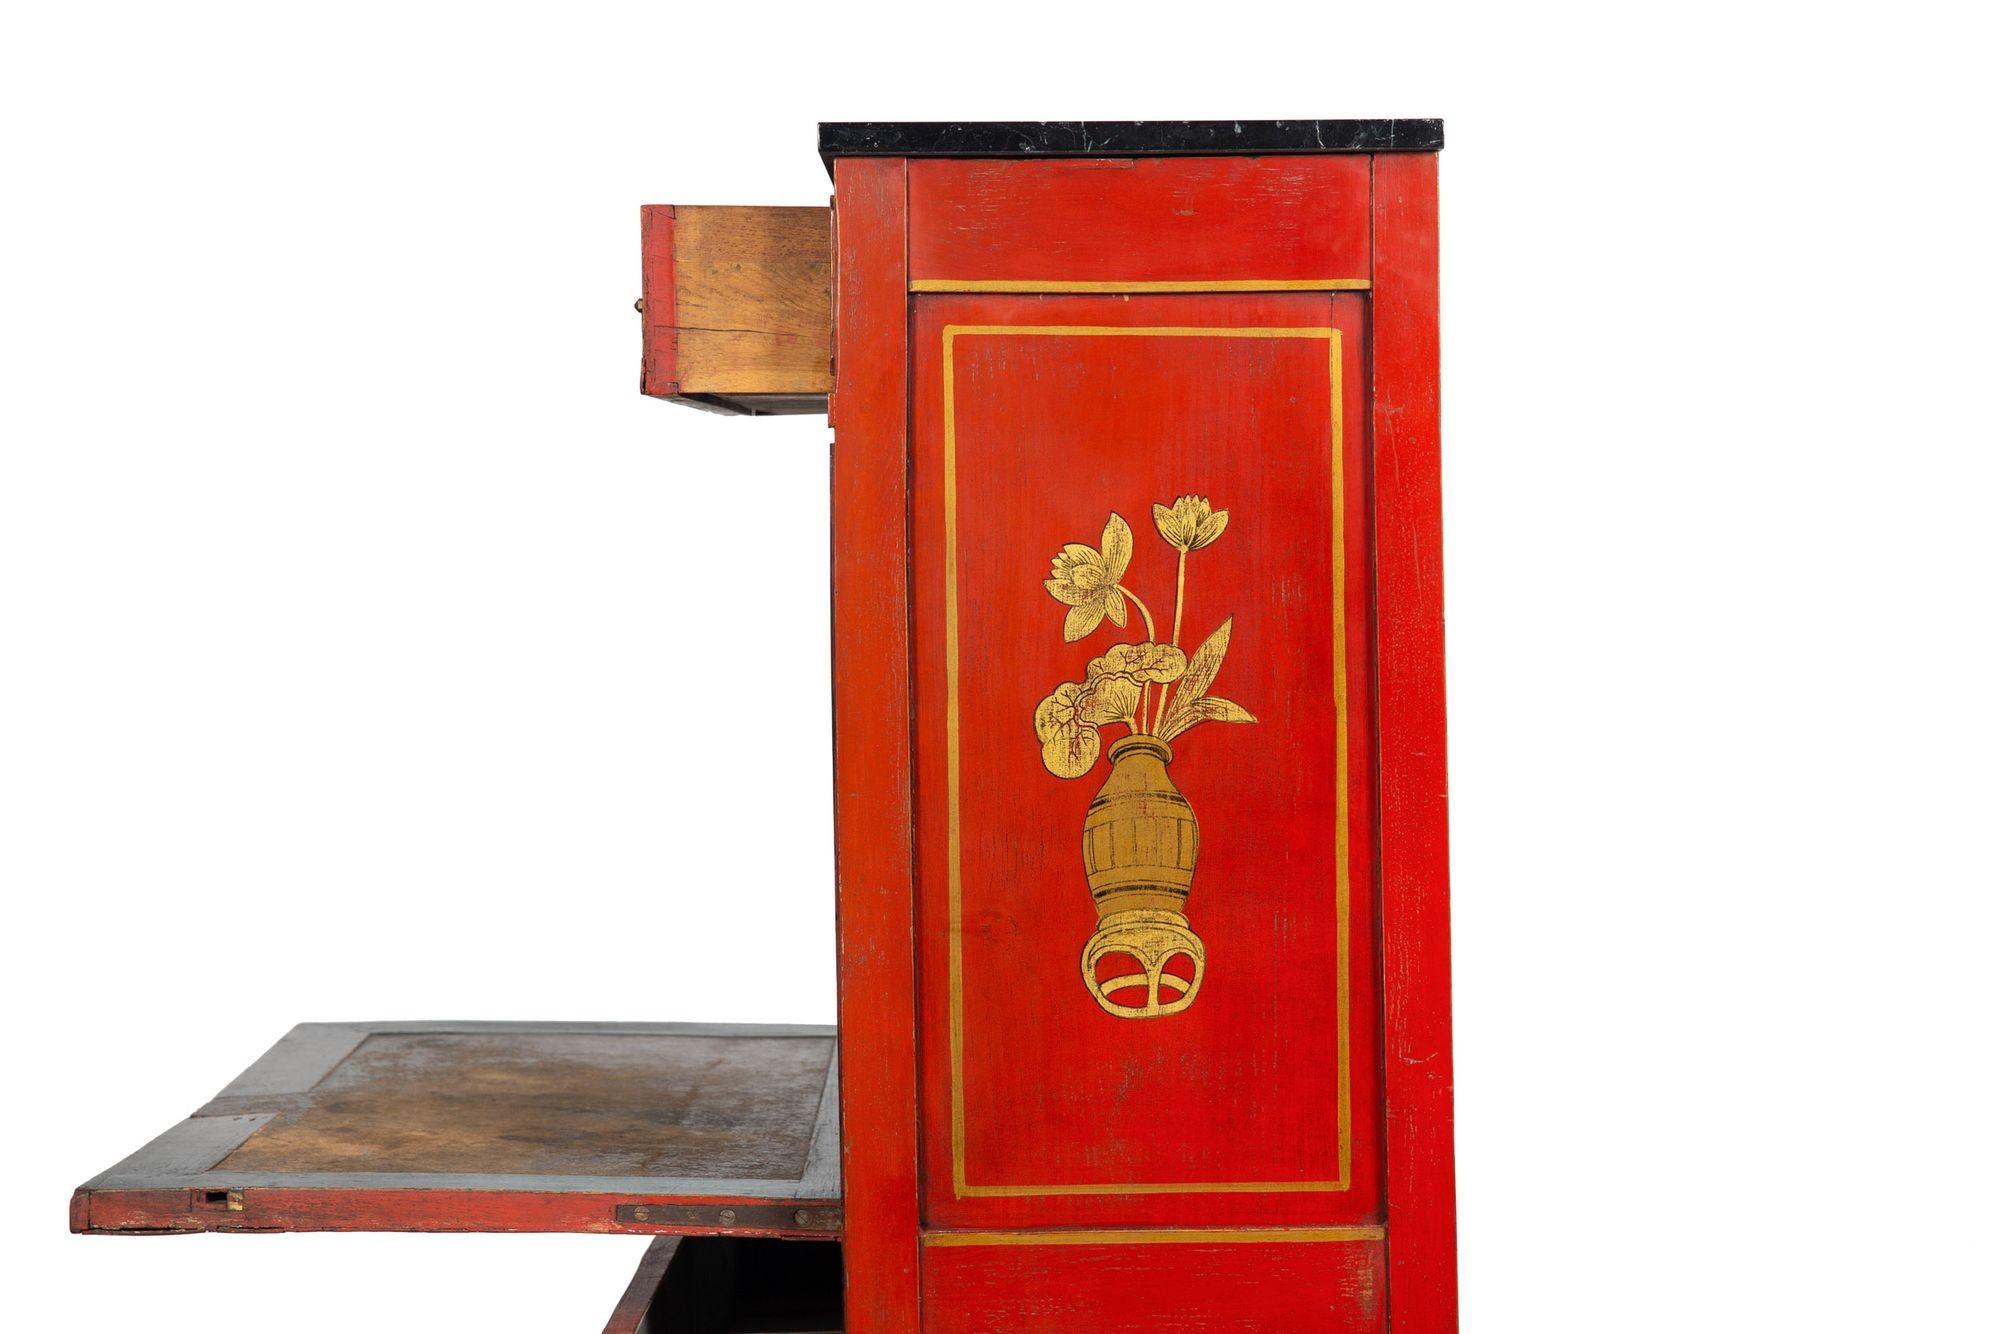 Français Bureau d'automne de style Louis XVI du 19ème siècle, rouge chinoiserie française ancienne